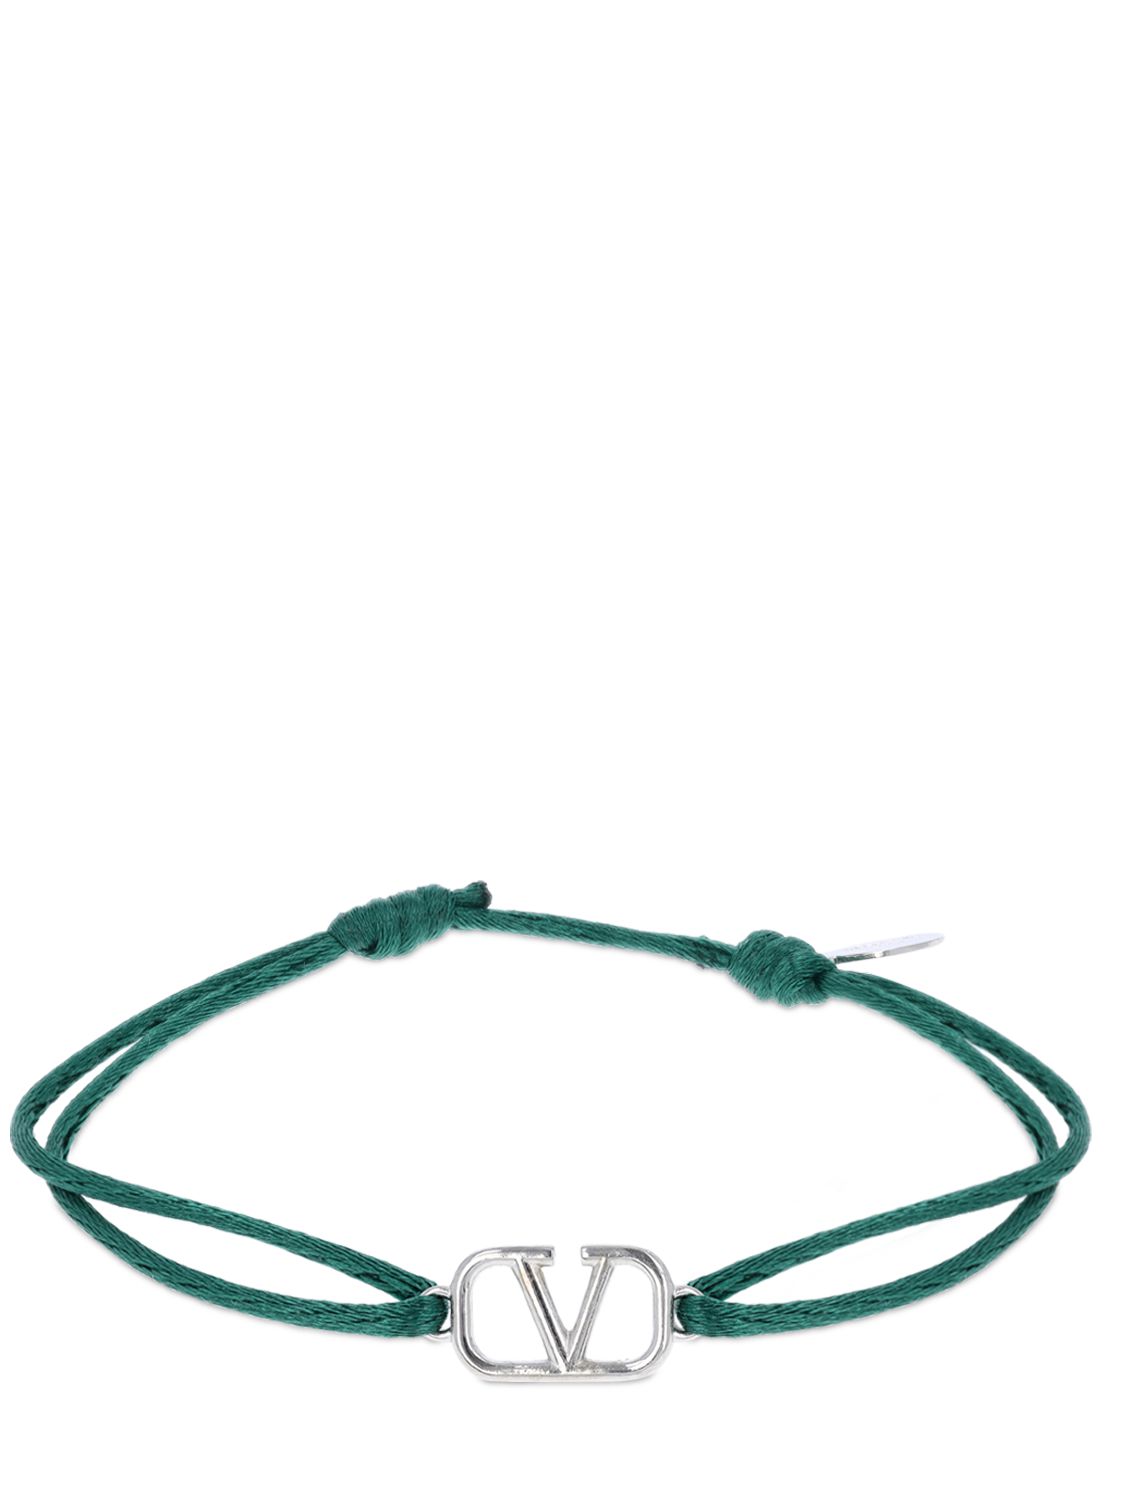 V Logo Slim Adjustable Bracelet - VALENTINO GARAVANI - Modalova